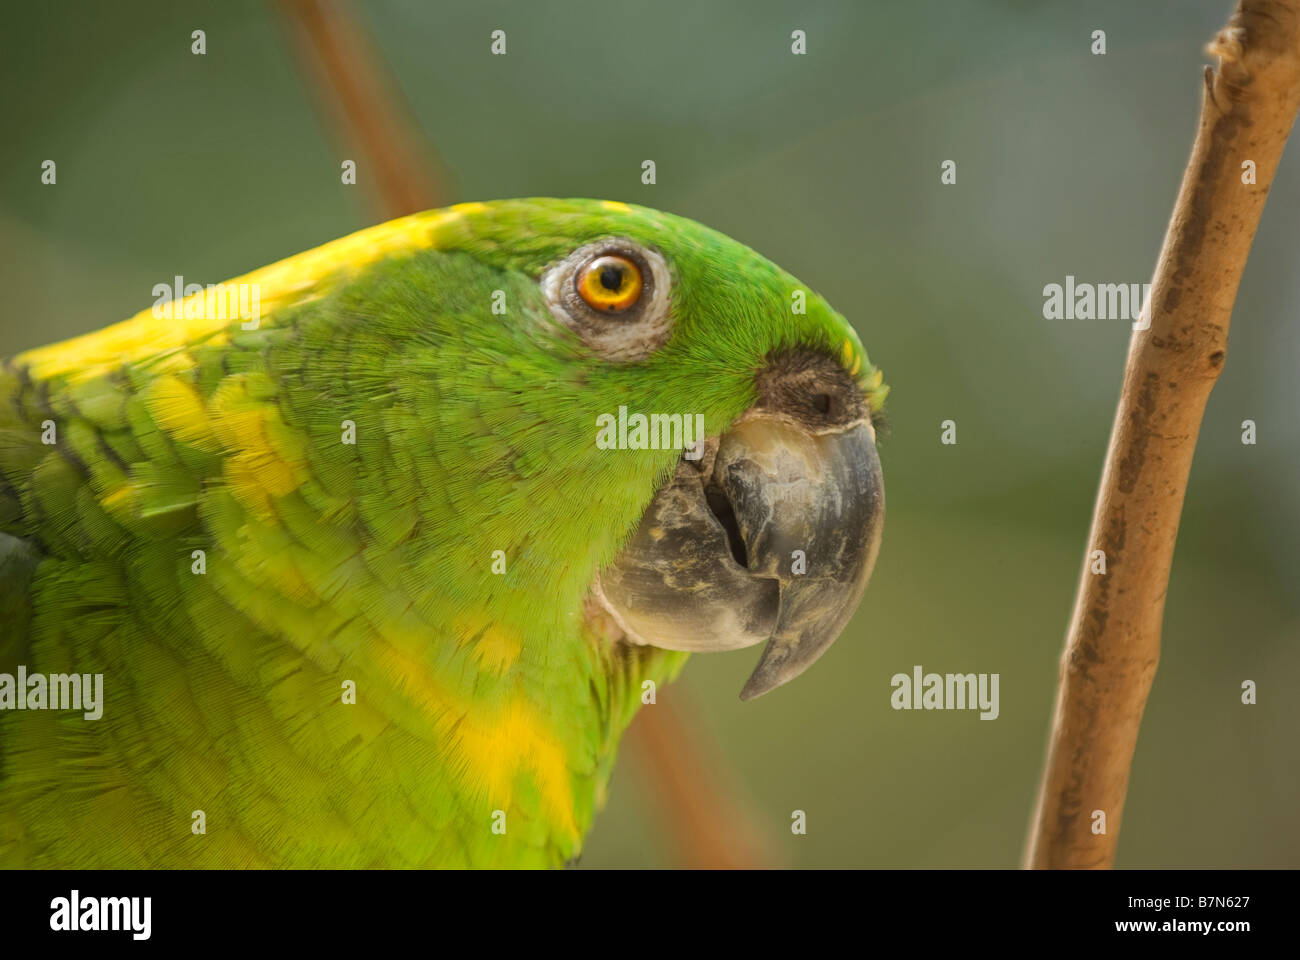 Honduras, Copan, Macaw Mountain Bird Park. Yellow-Naped Amazon Parrot, Amazona achrocephala. Stock Photo